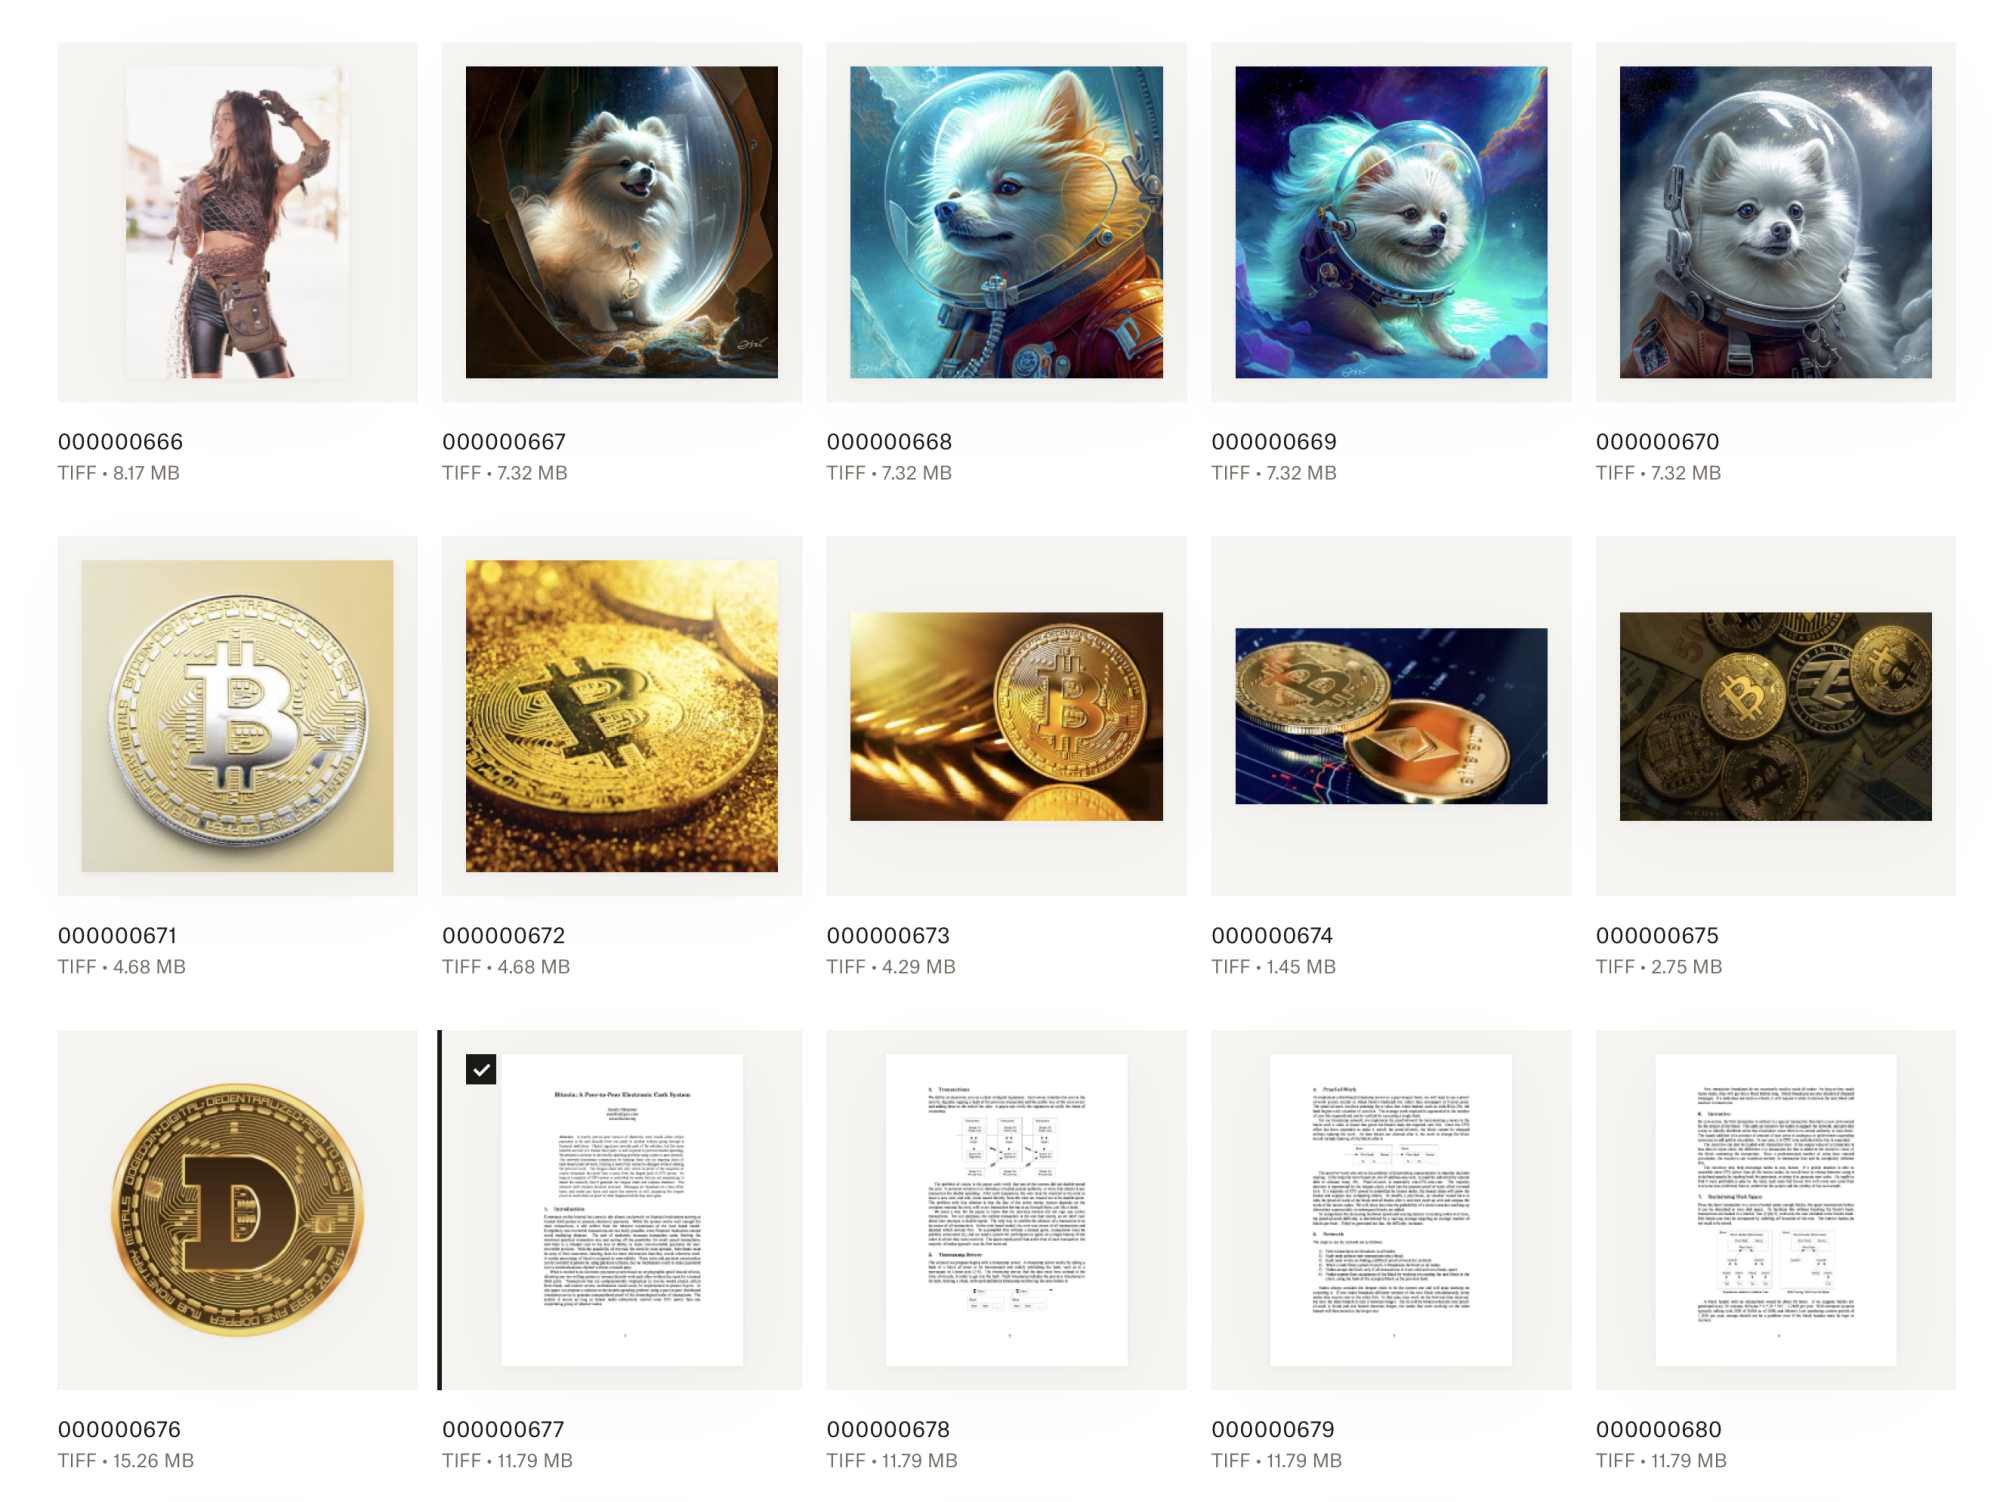 Une feuille d'images comprenant des chiens dans l'espace et des pièces cryptographiques.